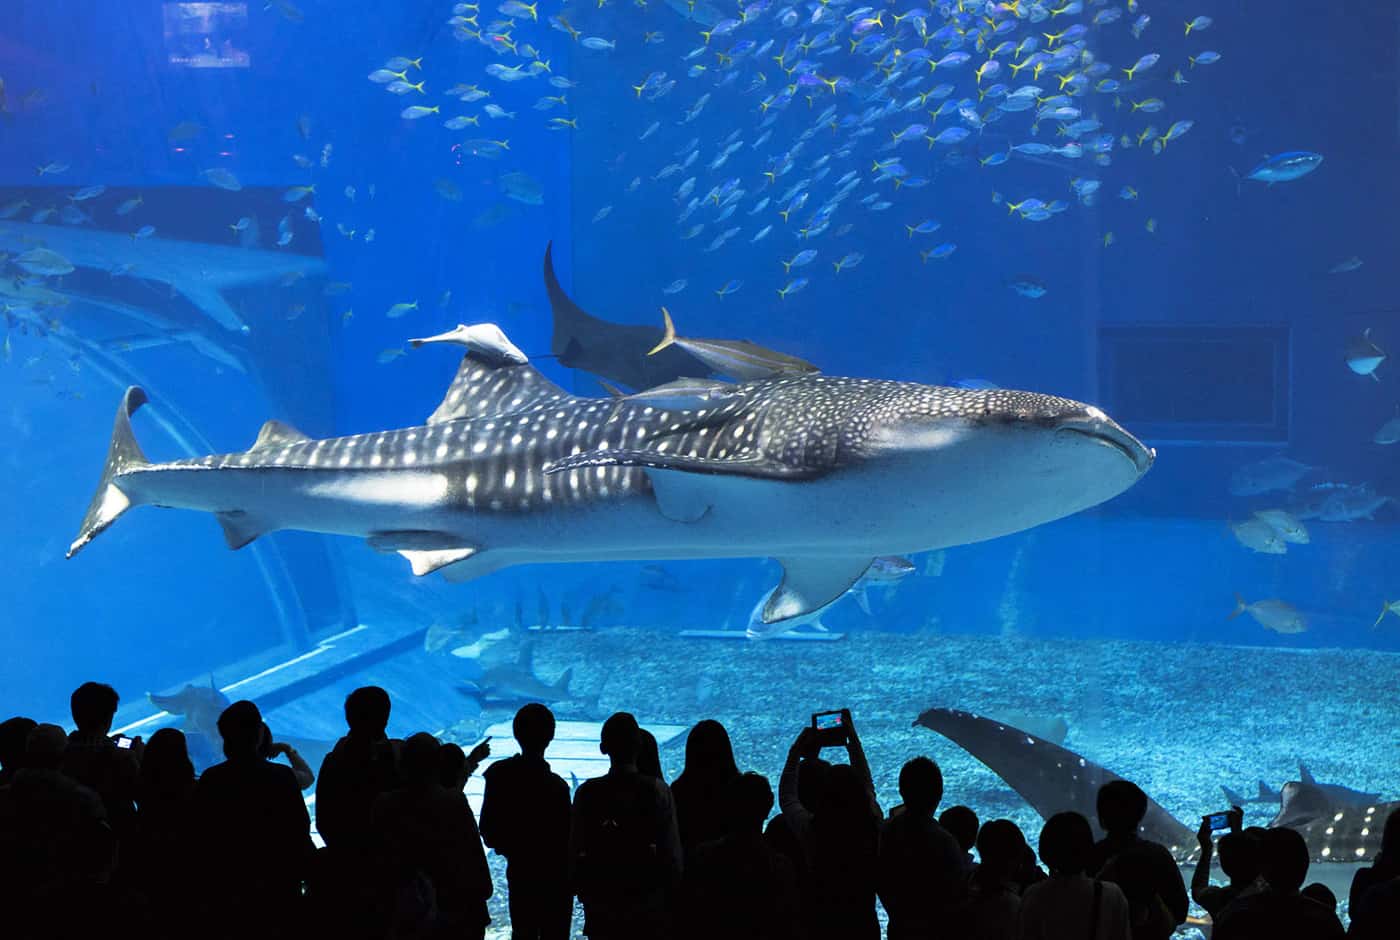 ฉลามวาฬ (Jinbeisan) ที่ พิพิธภัณฑ์สัตว์น้ำชูราอุมิ (Churaumi Aquarium) บนเกาะโอกินาว่า (Okinawa Main Island)